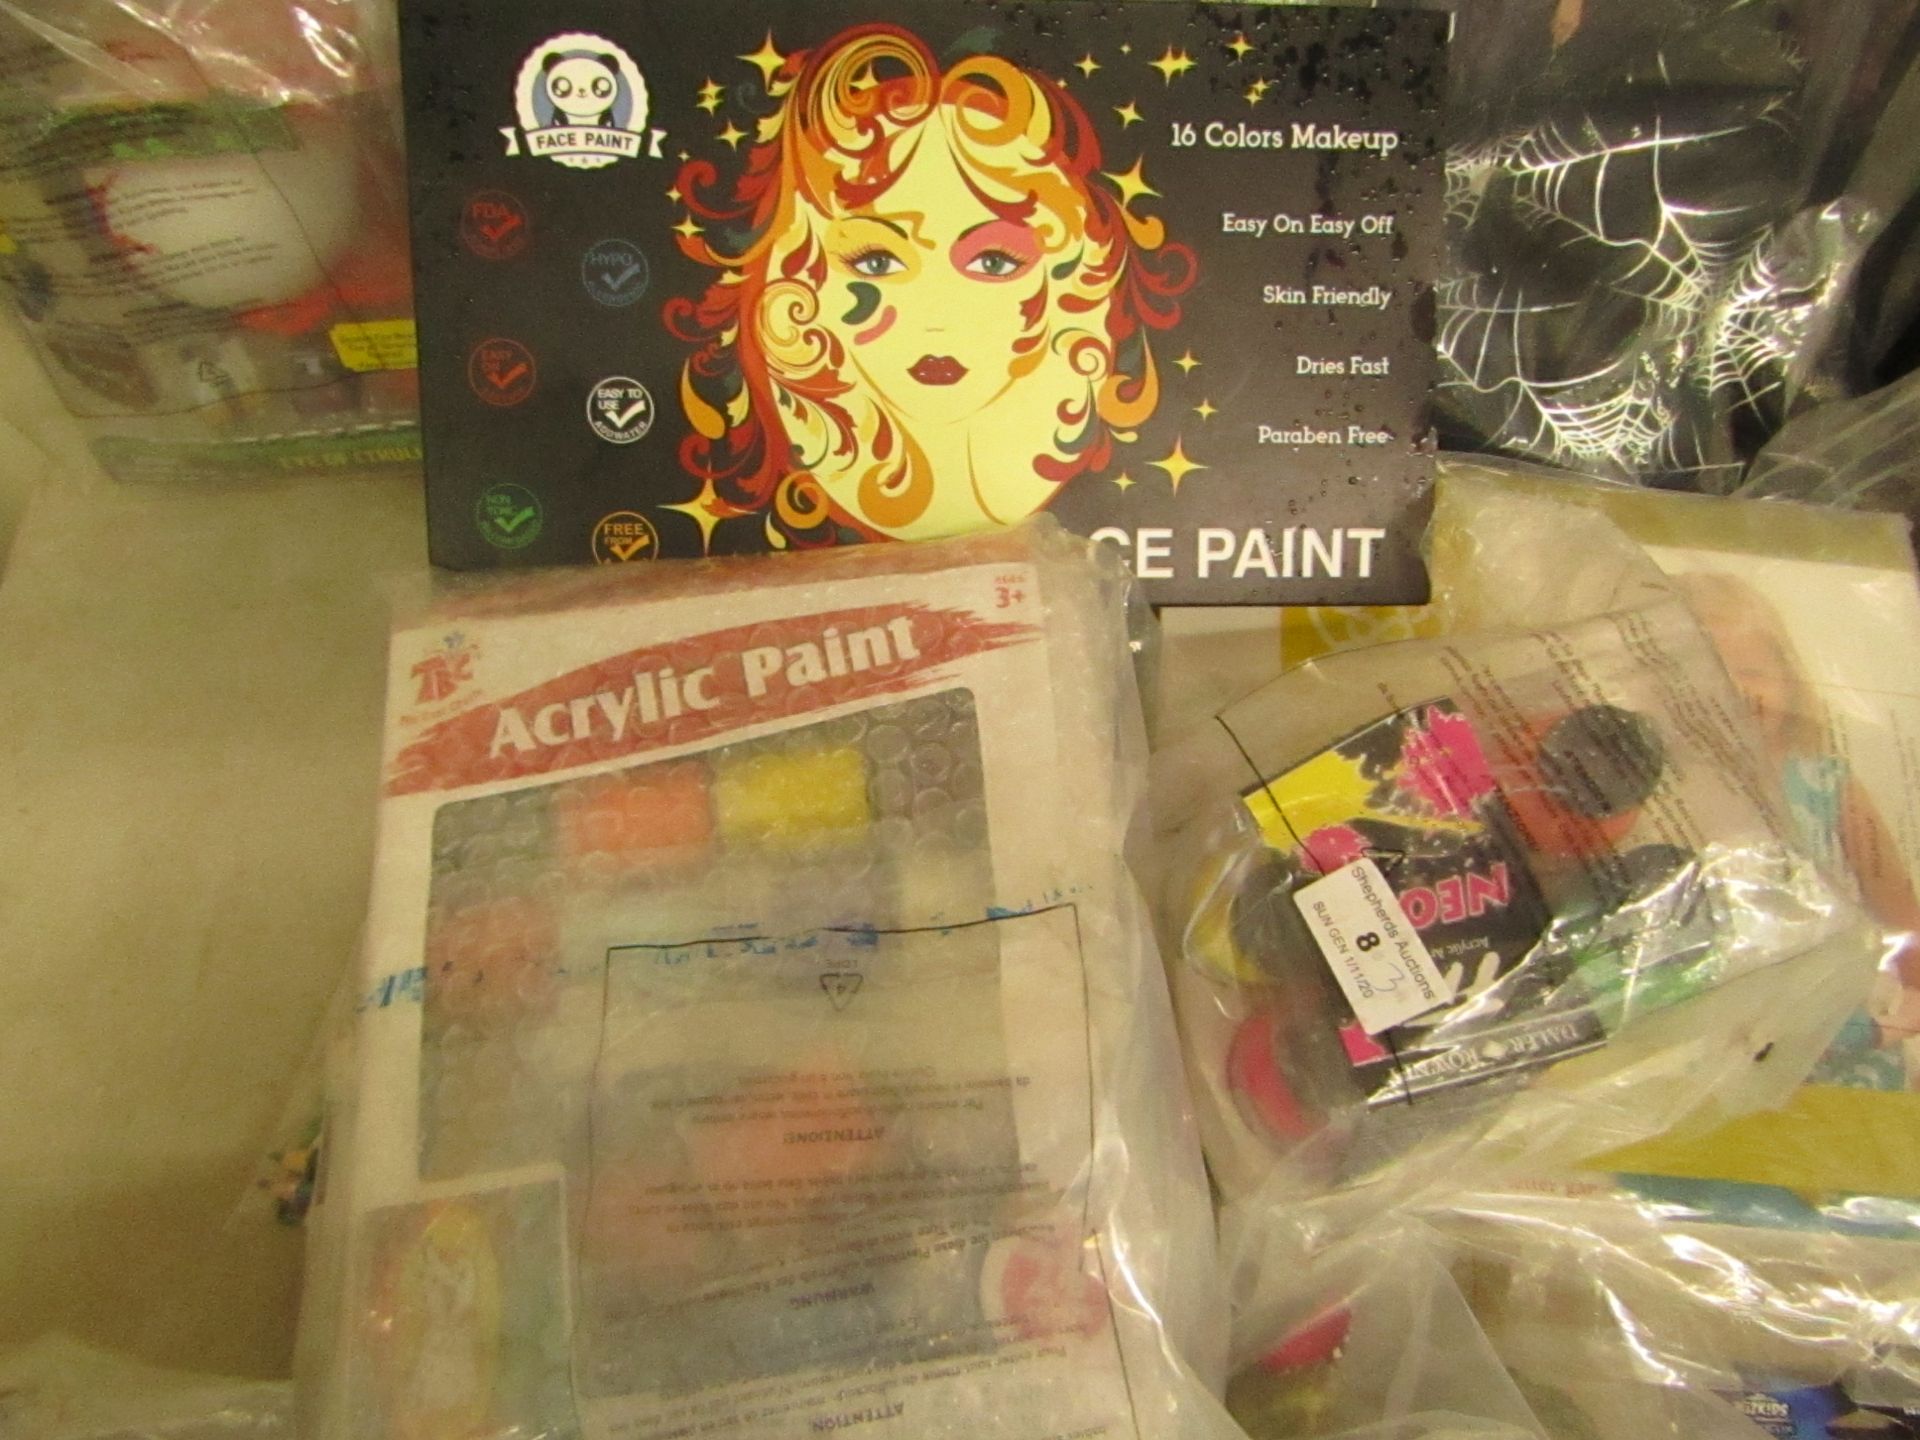 3 Items Being a Neon paint Set, Acrylic Paint Set & a 16 PC Face Paint set.